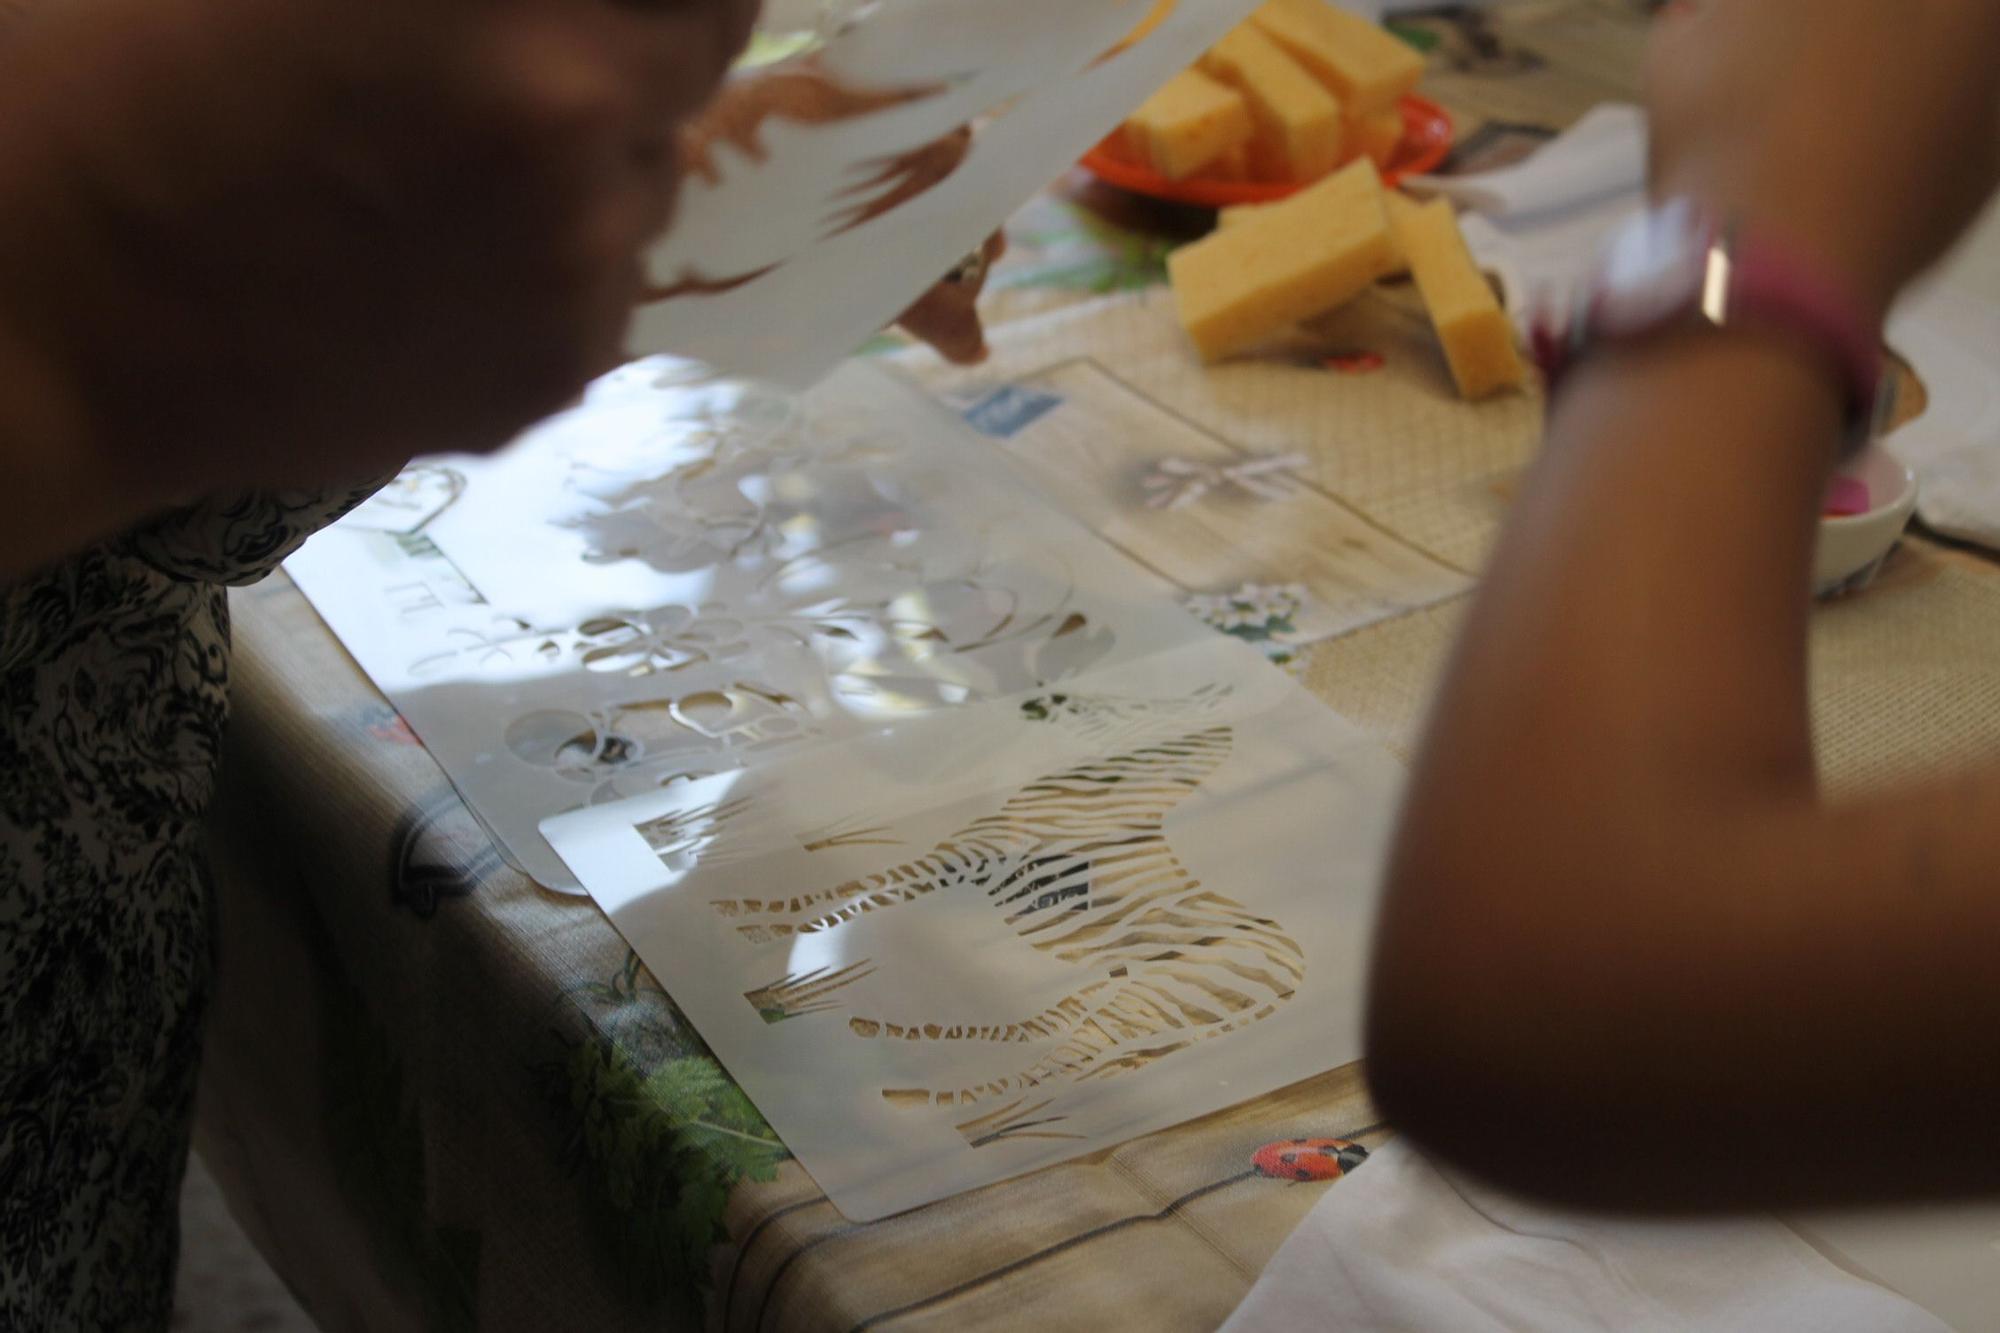 Galería de imágenes: Nietos y abuelos pintan camisetas en el taller de las fiestas de Cala de Bou